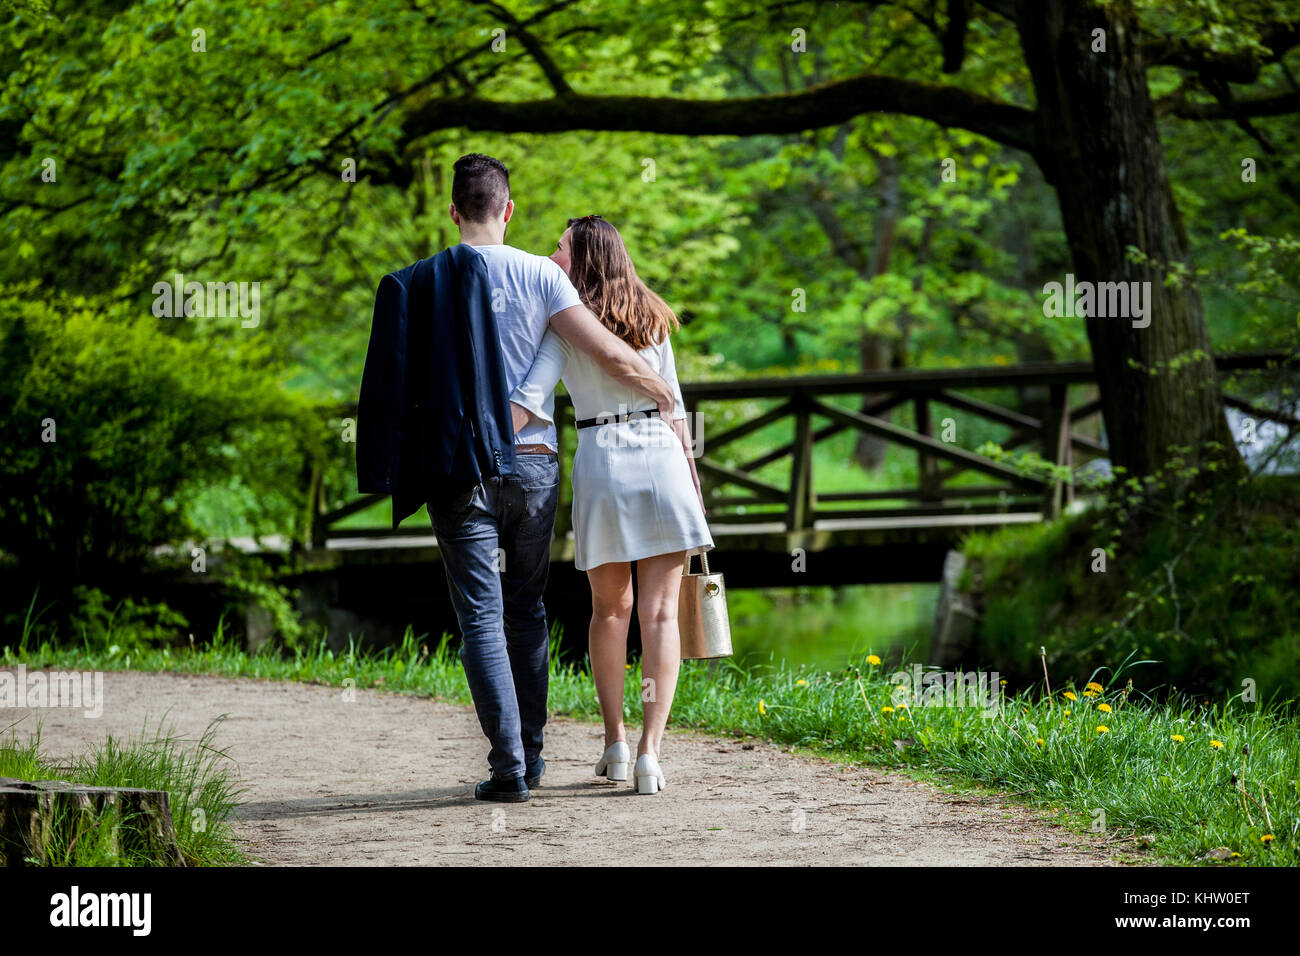 Coppia giovane innamorata, coppia che cammina in un parco, coppia uomo con vista posteriore donna in un giardino Praga coppia romantica che passeggia nel parco due amanti nel parco cittadino Foto Stock